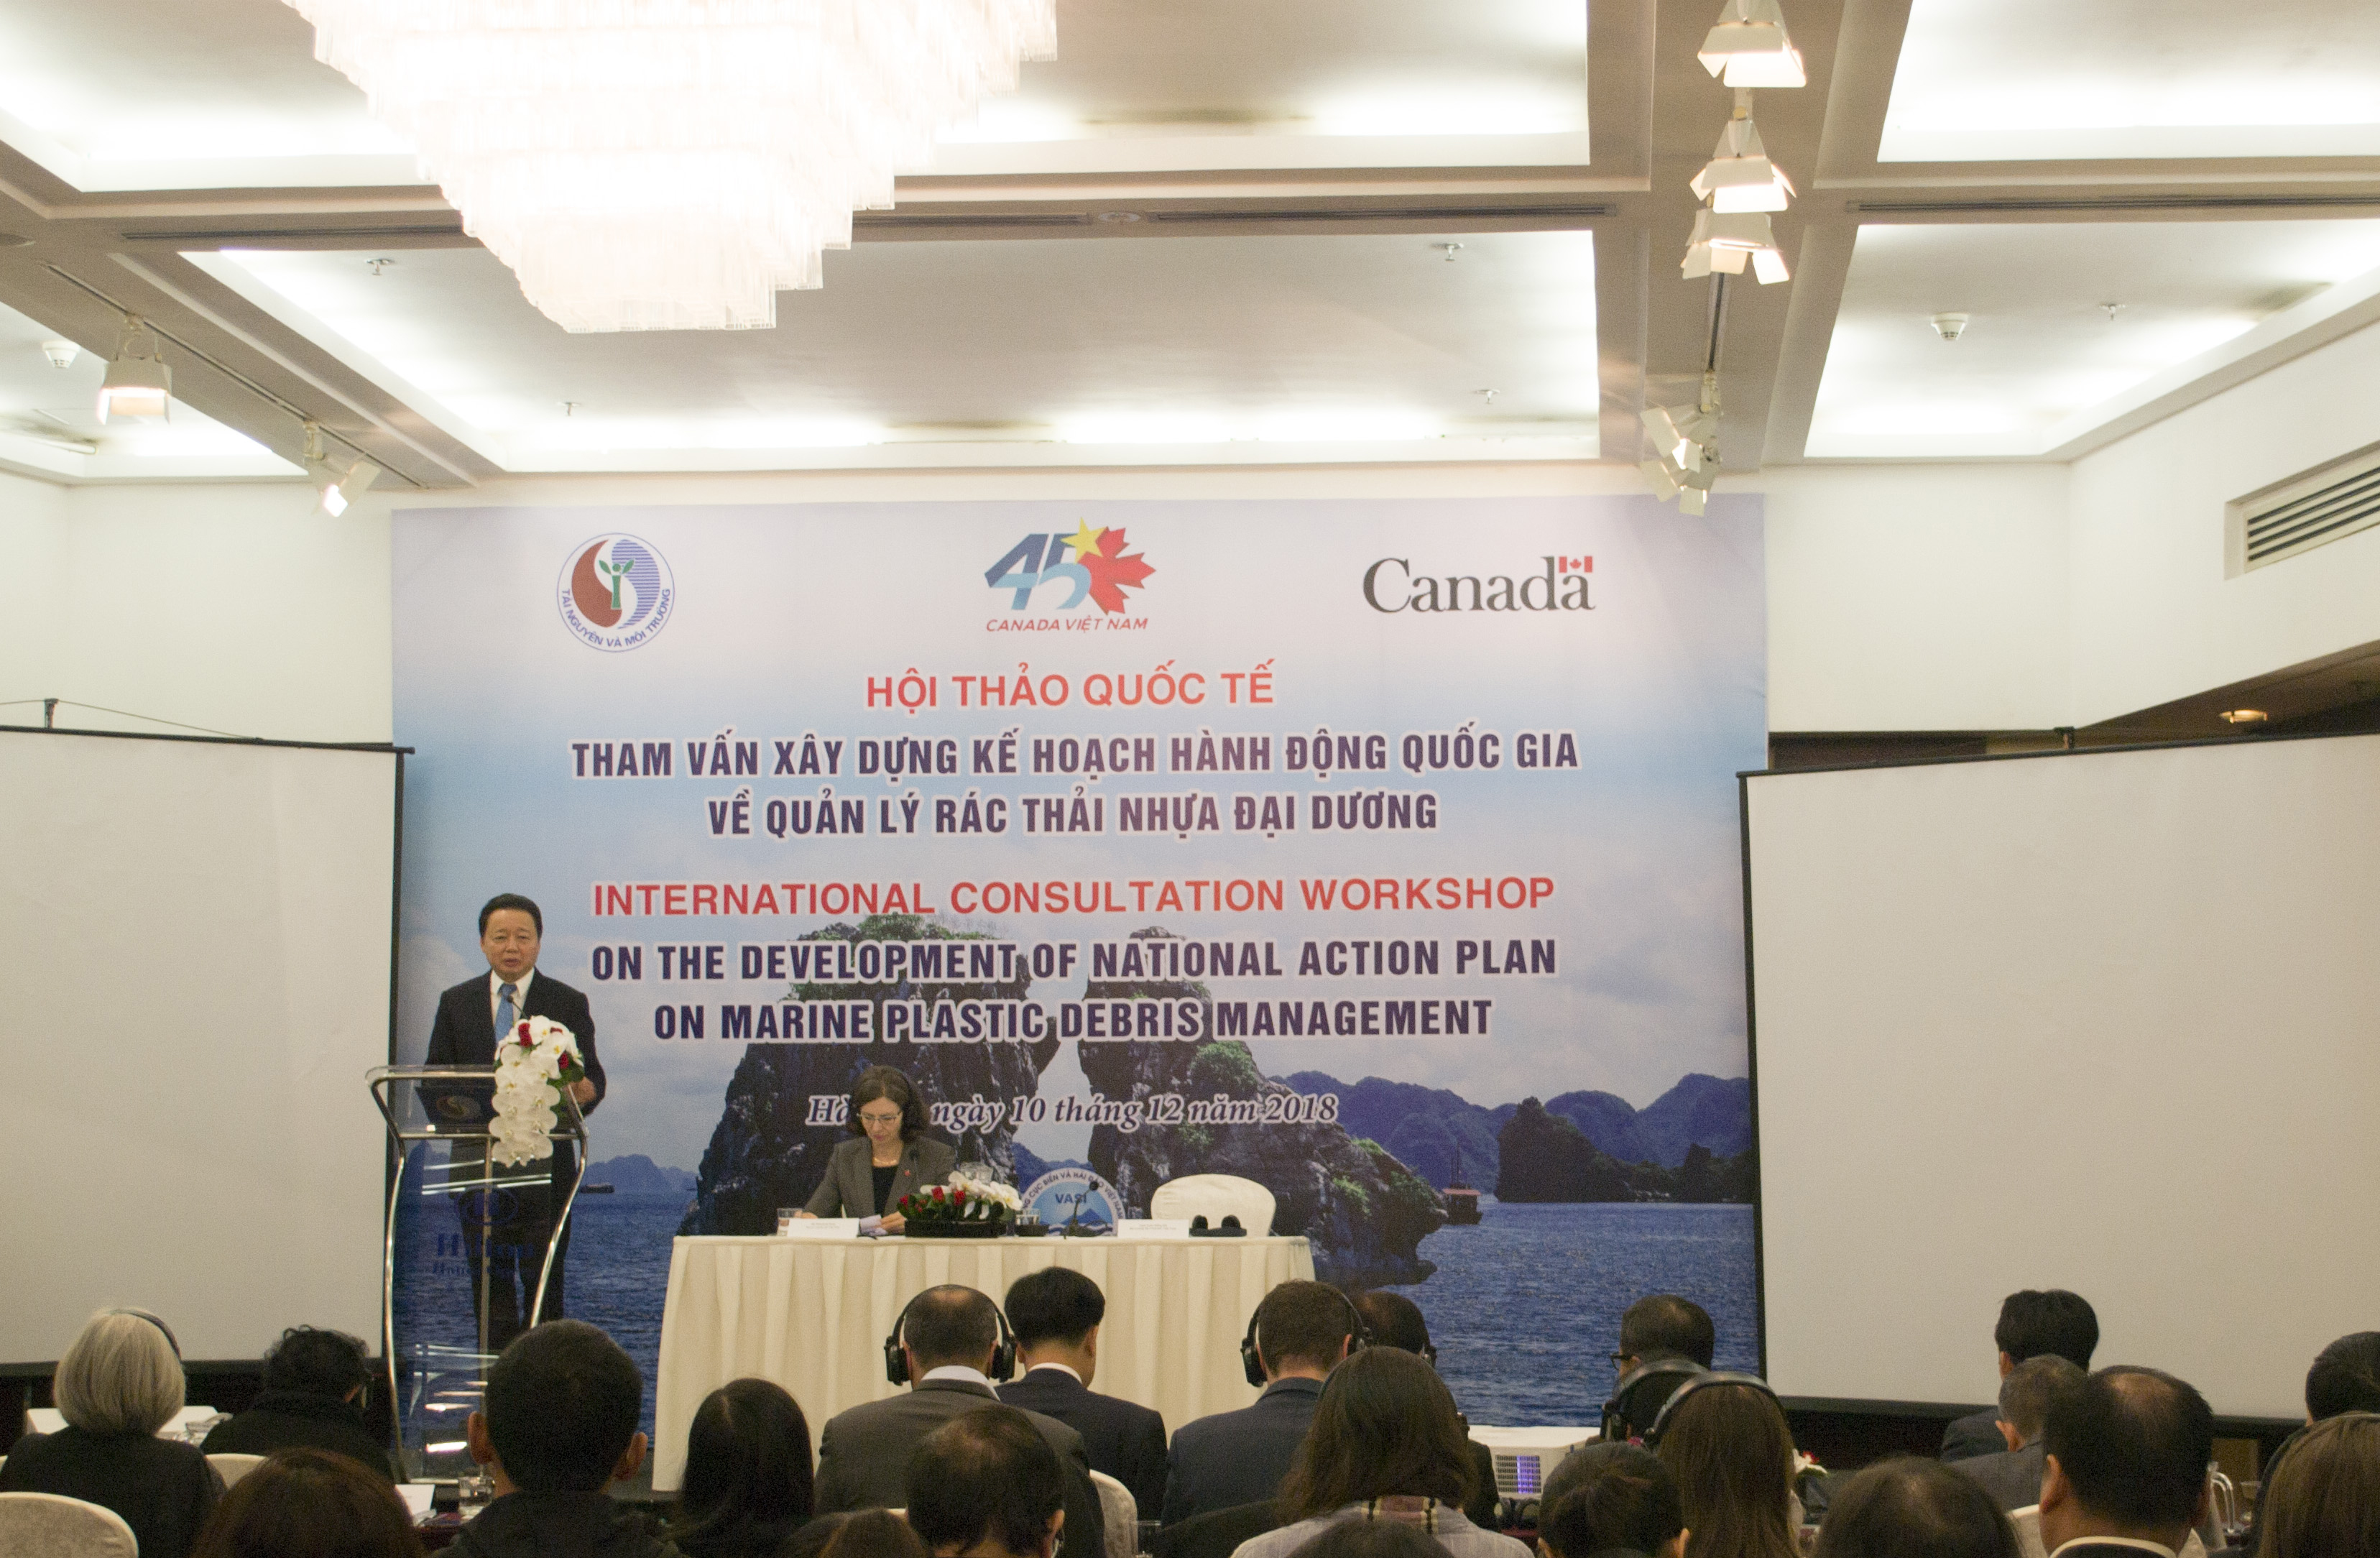 Hội thảo quốc tế tham vấn xây dựng Kế hoạch hành động quốc gia của Việt Nam về quản lý rác thải nhựa đại dương